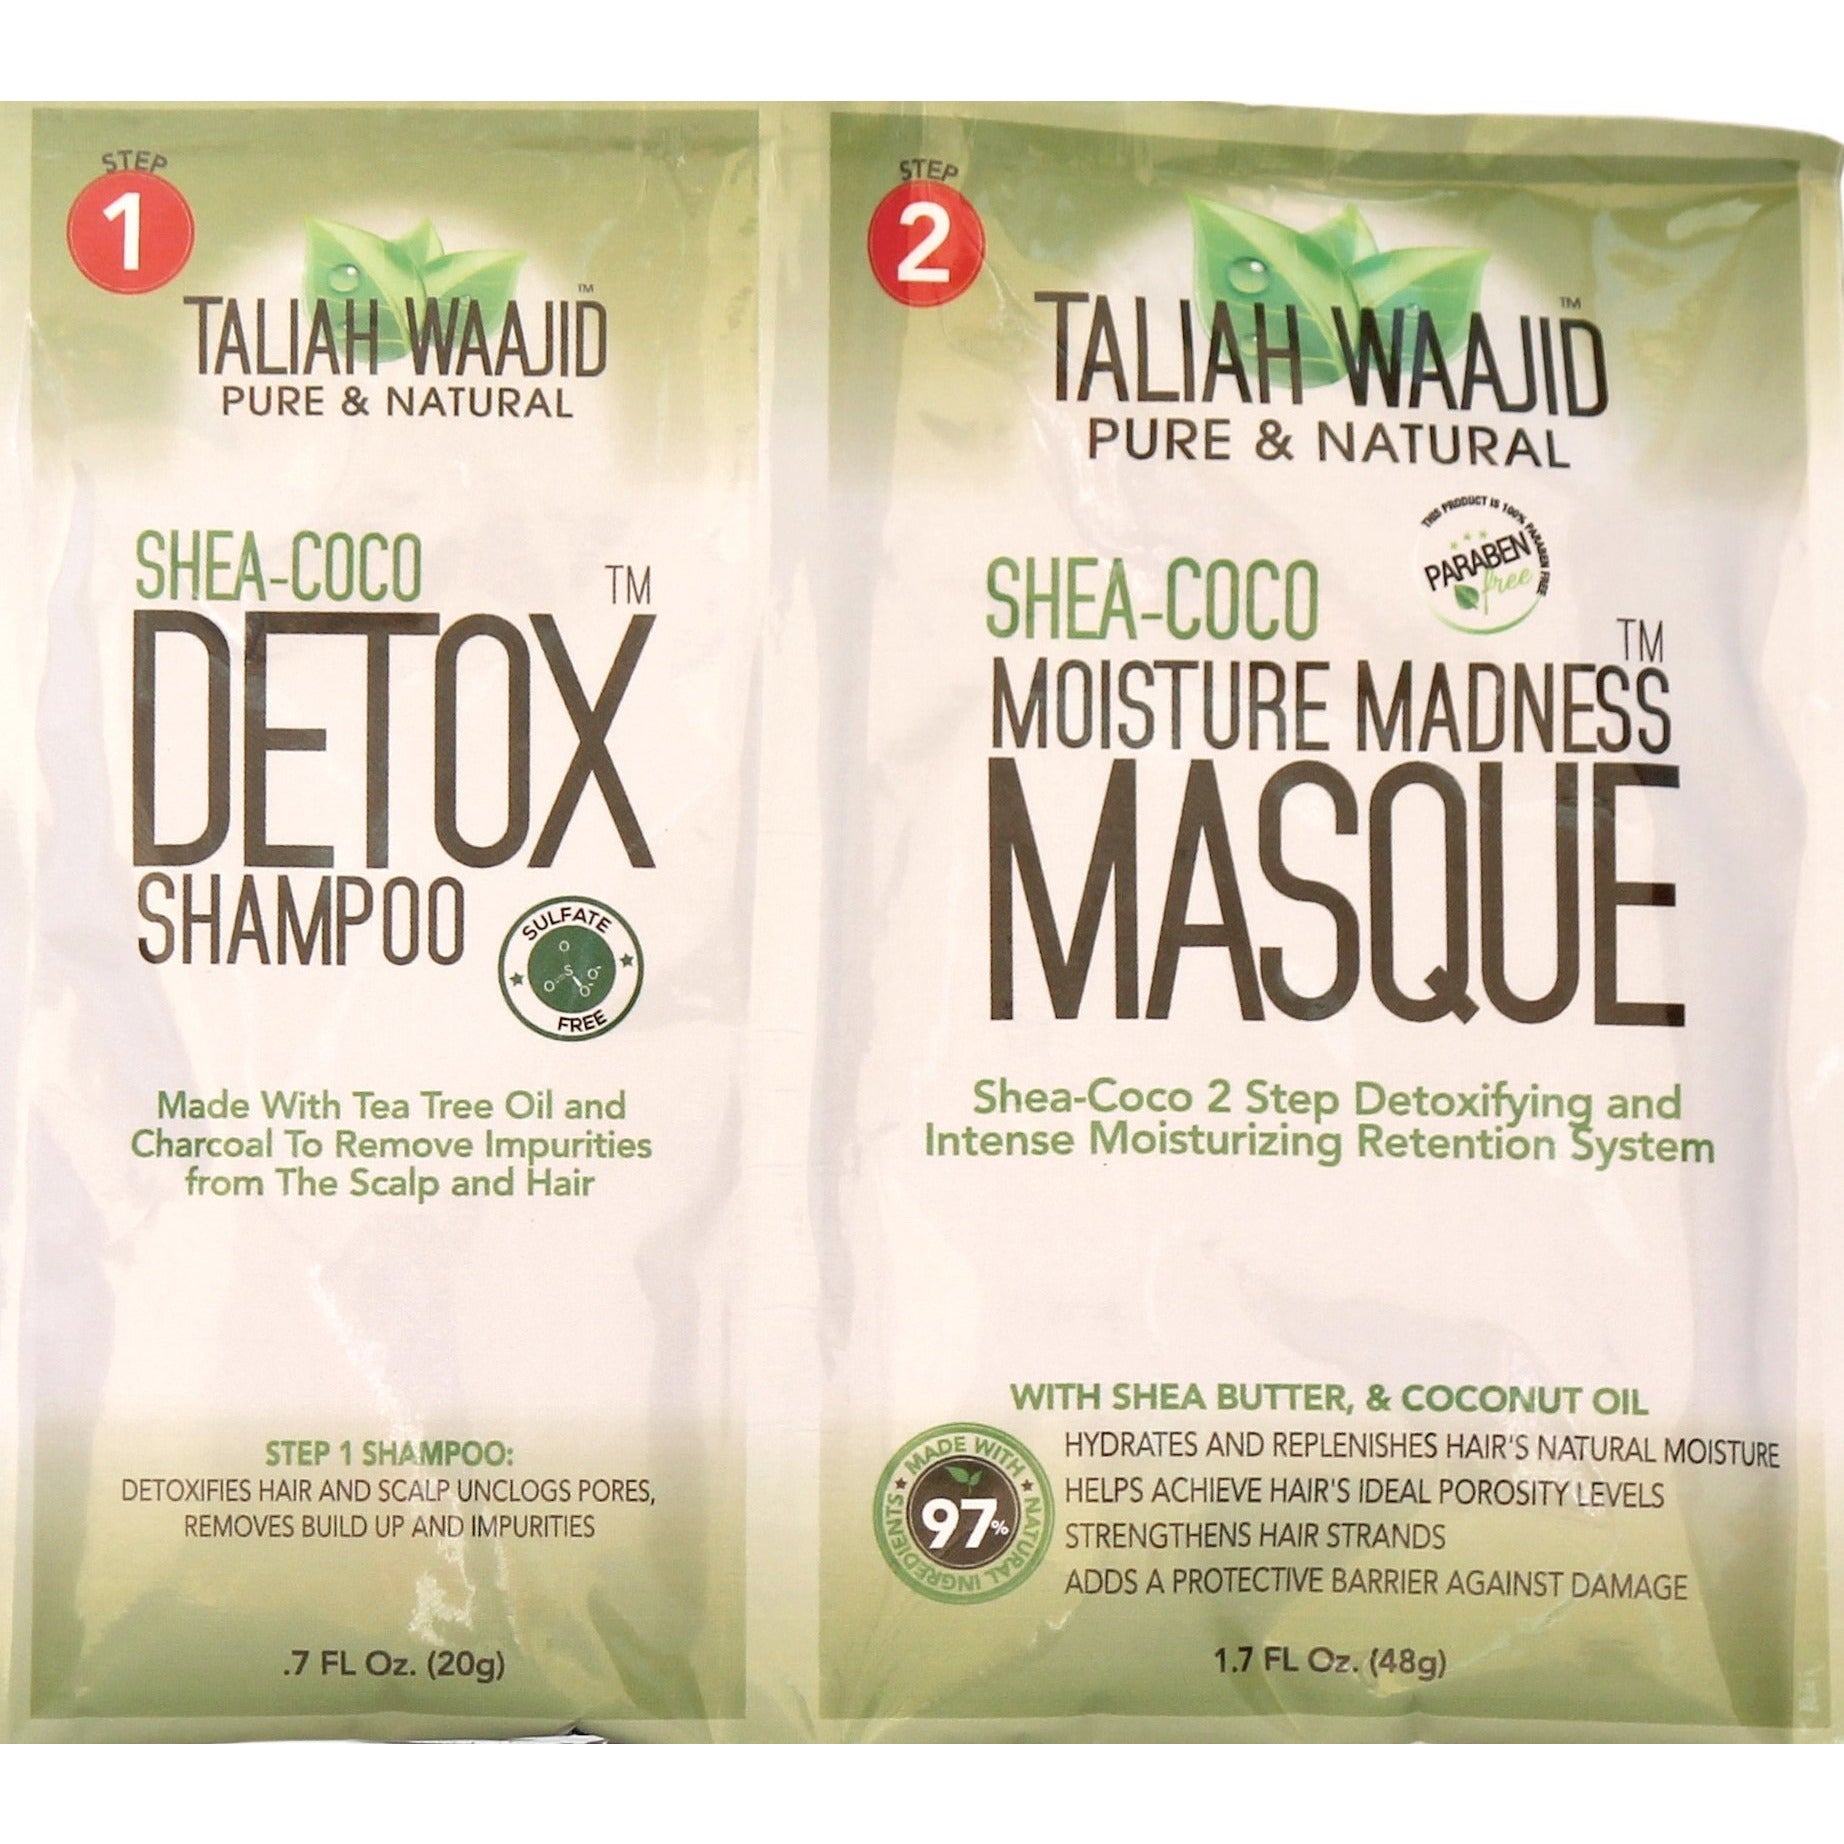 4th Ave Market: Taliah Waajid Shea-Coco Detox Shampoo & Moisture Madness Masque